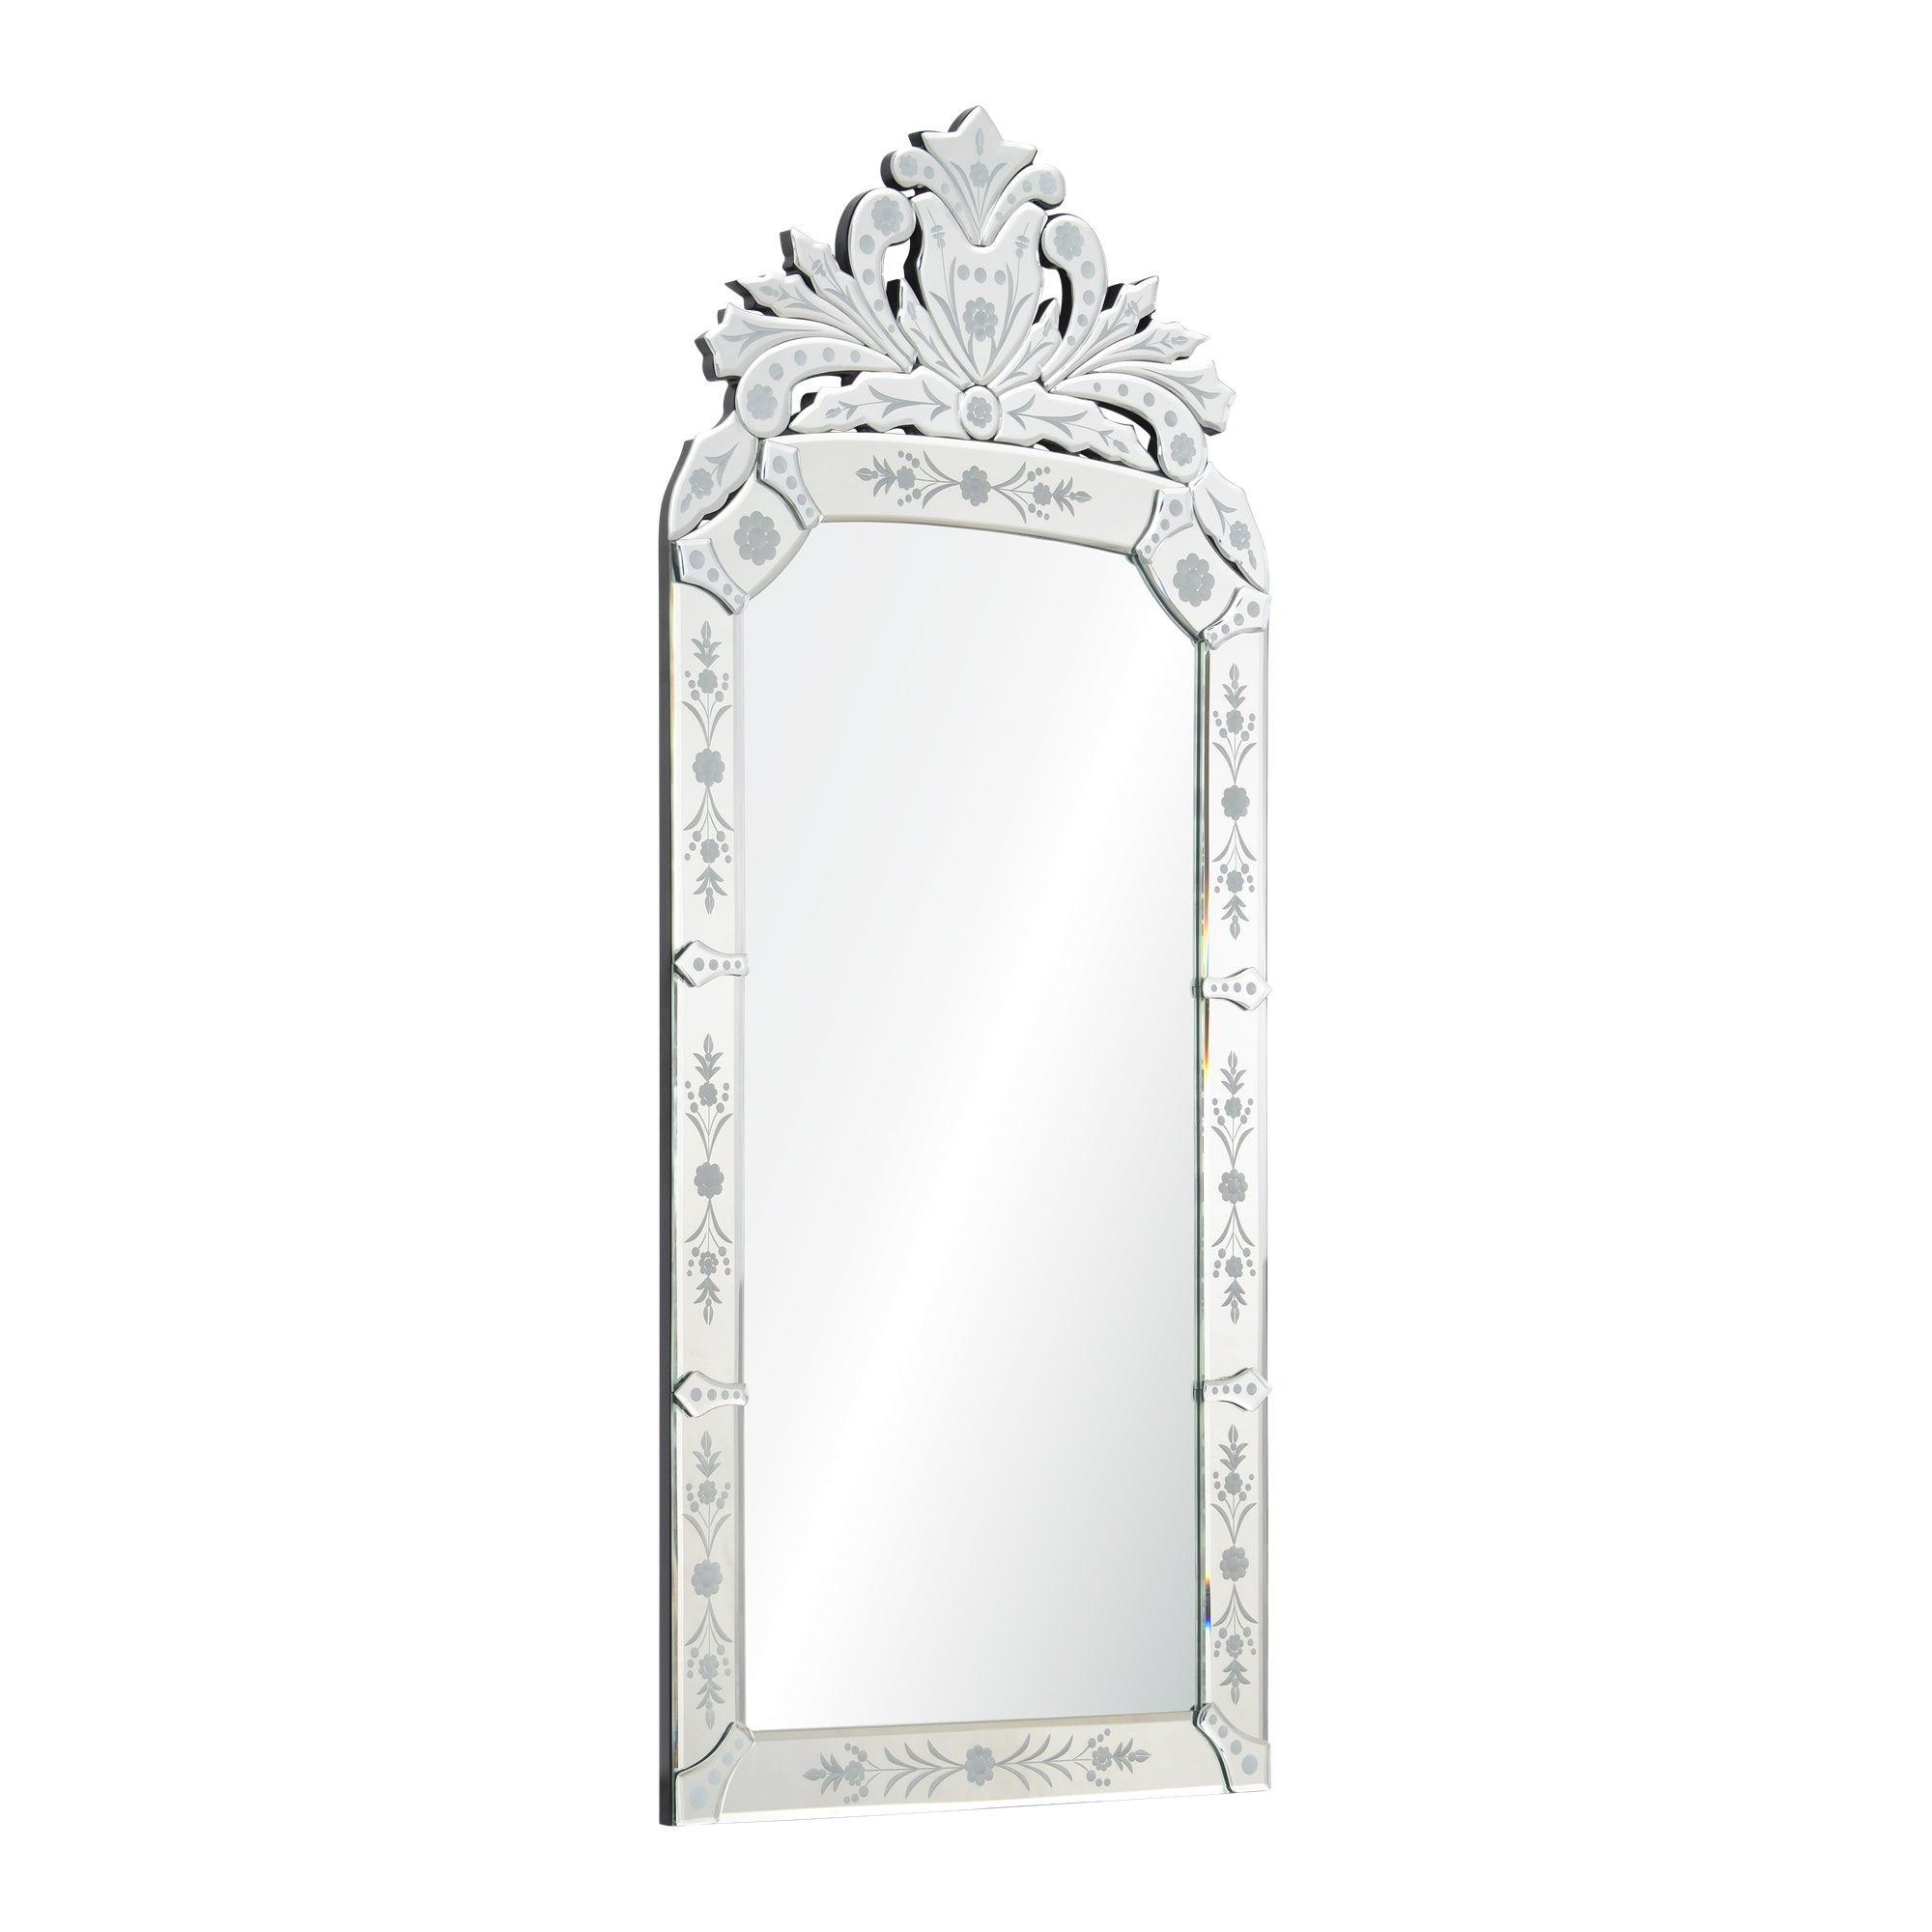 Renwil - Venetian Mirror - MT1020 | Montreal Lighting & Hardware